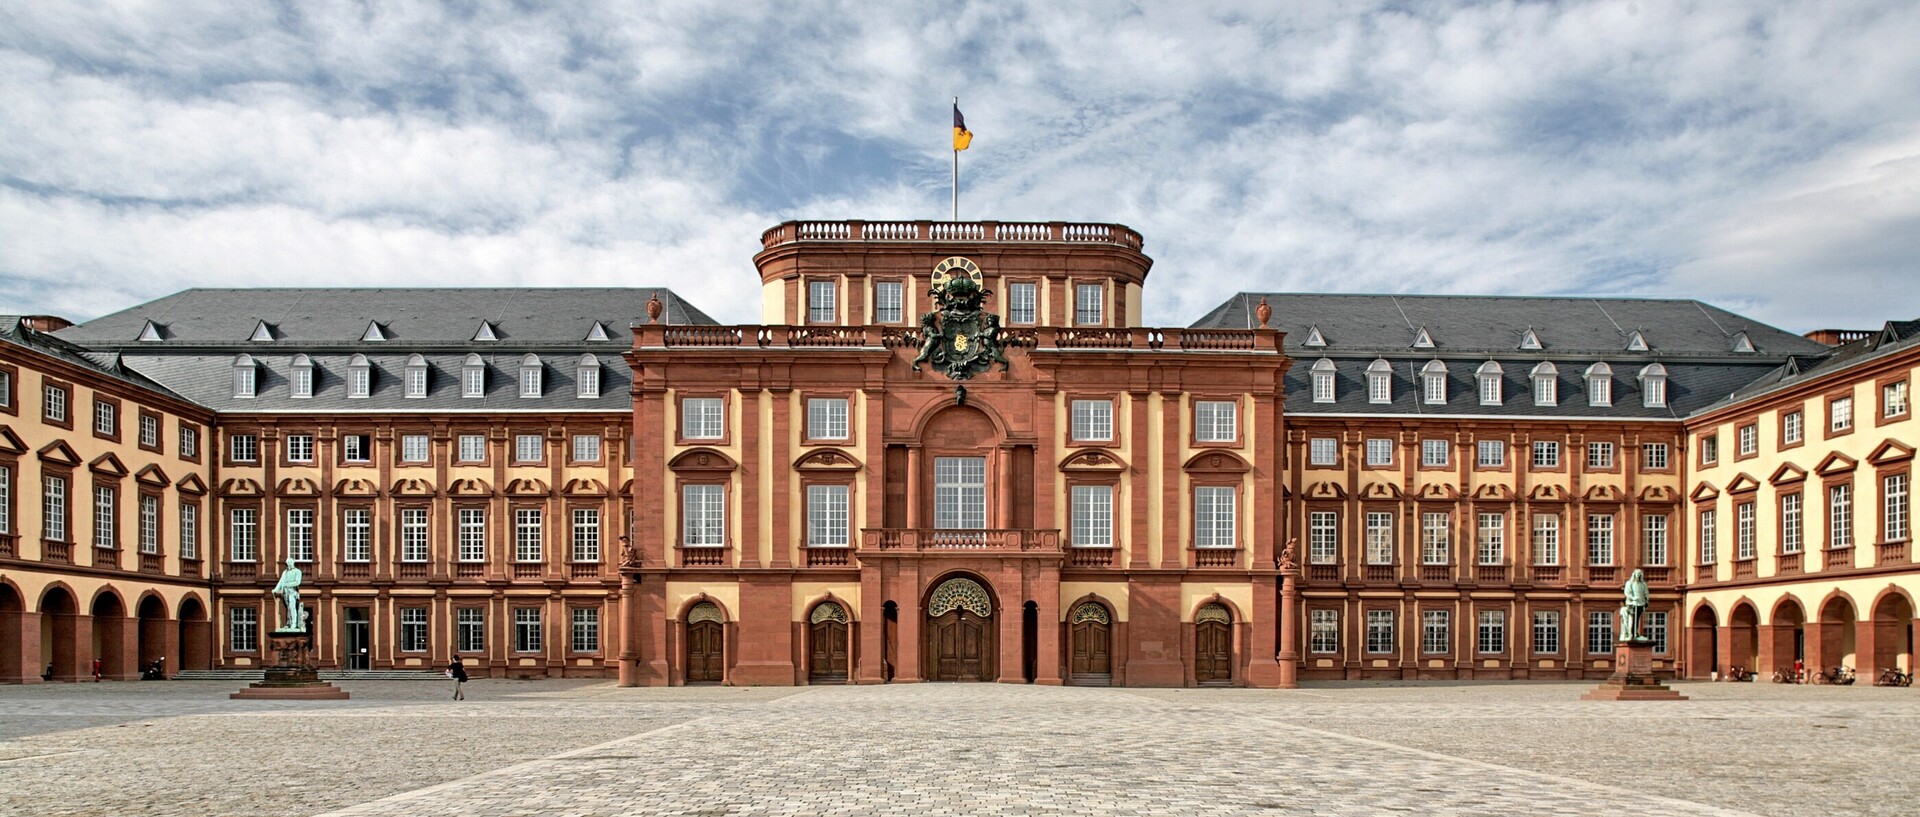 Der Ehrenhof des Mannheimer Schlosses bei Tag